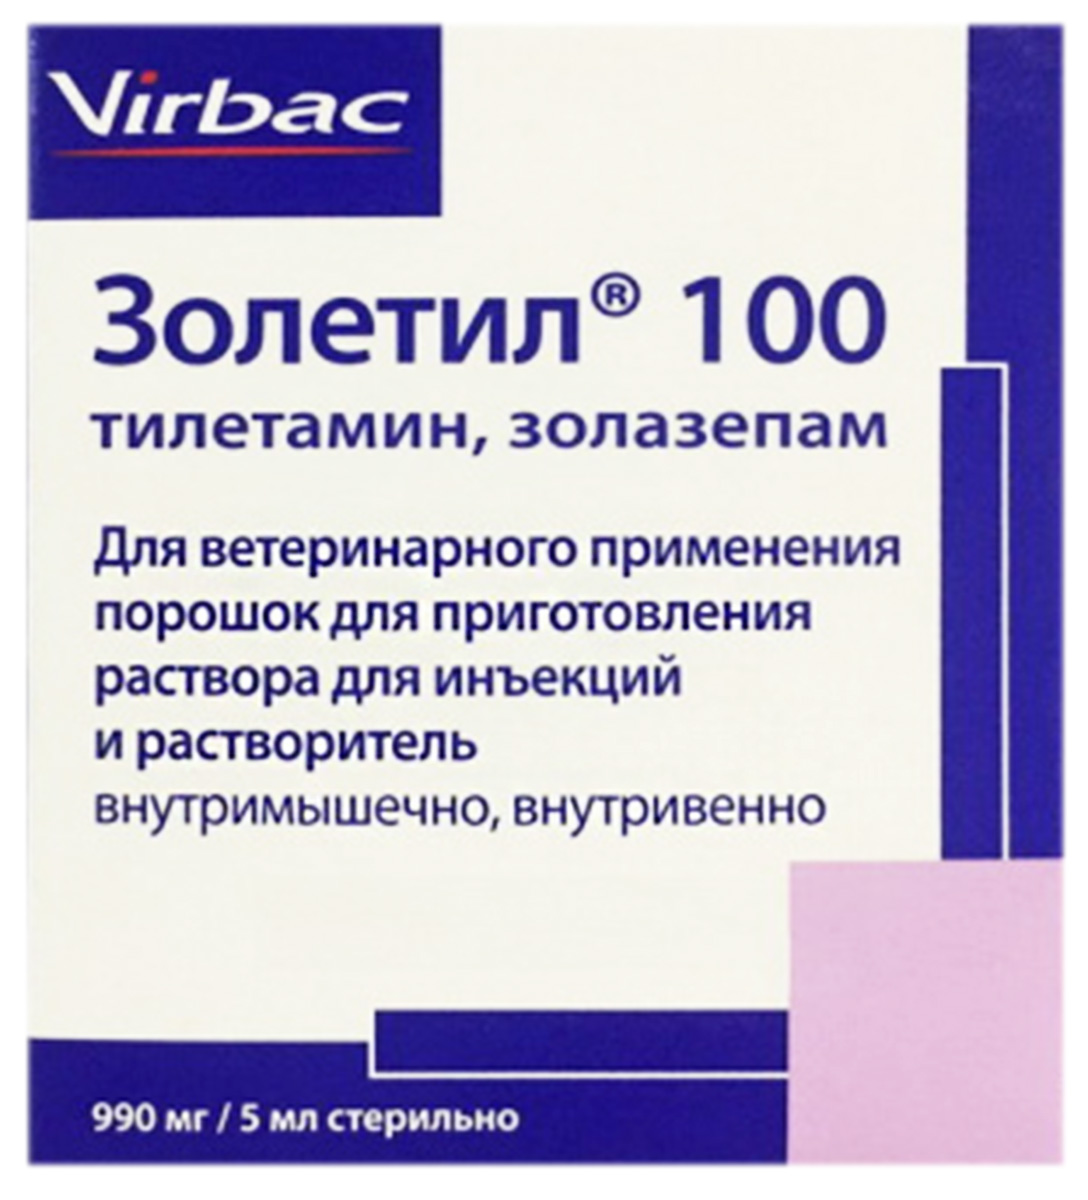 VIRBAC ЗОЛЕТИЛ 100 препарат для общей анестезии 5 мл порошок для инъекций + растворитель